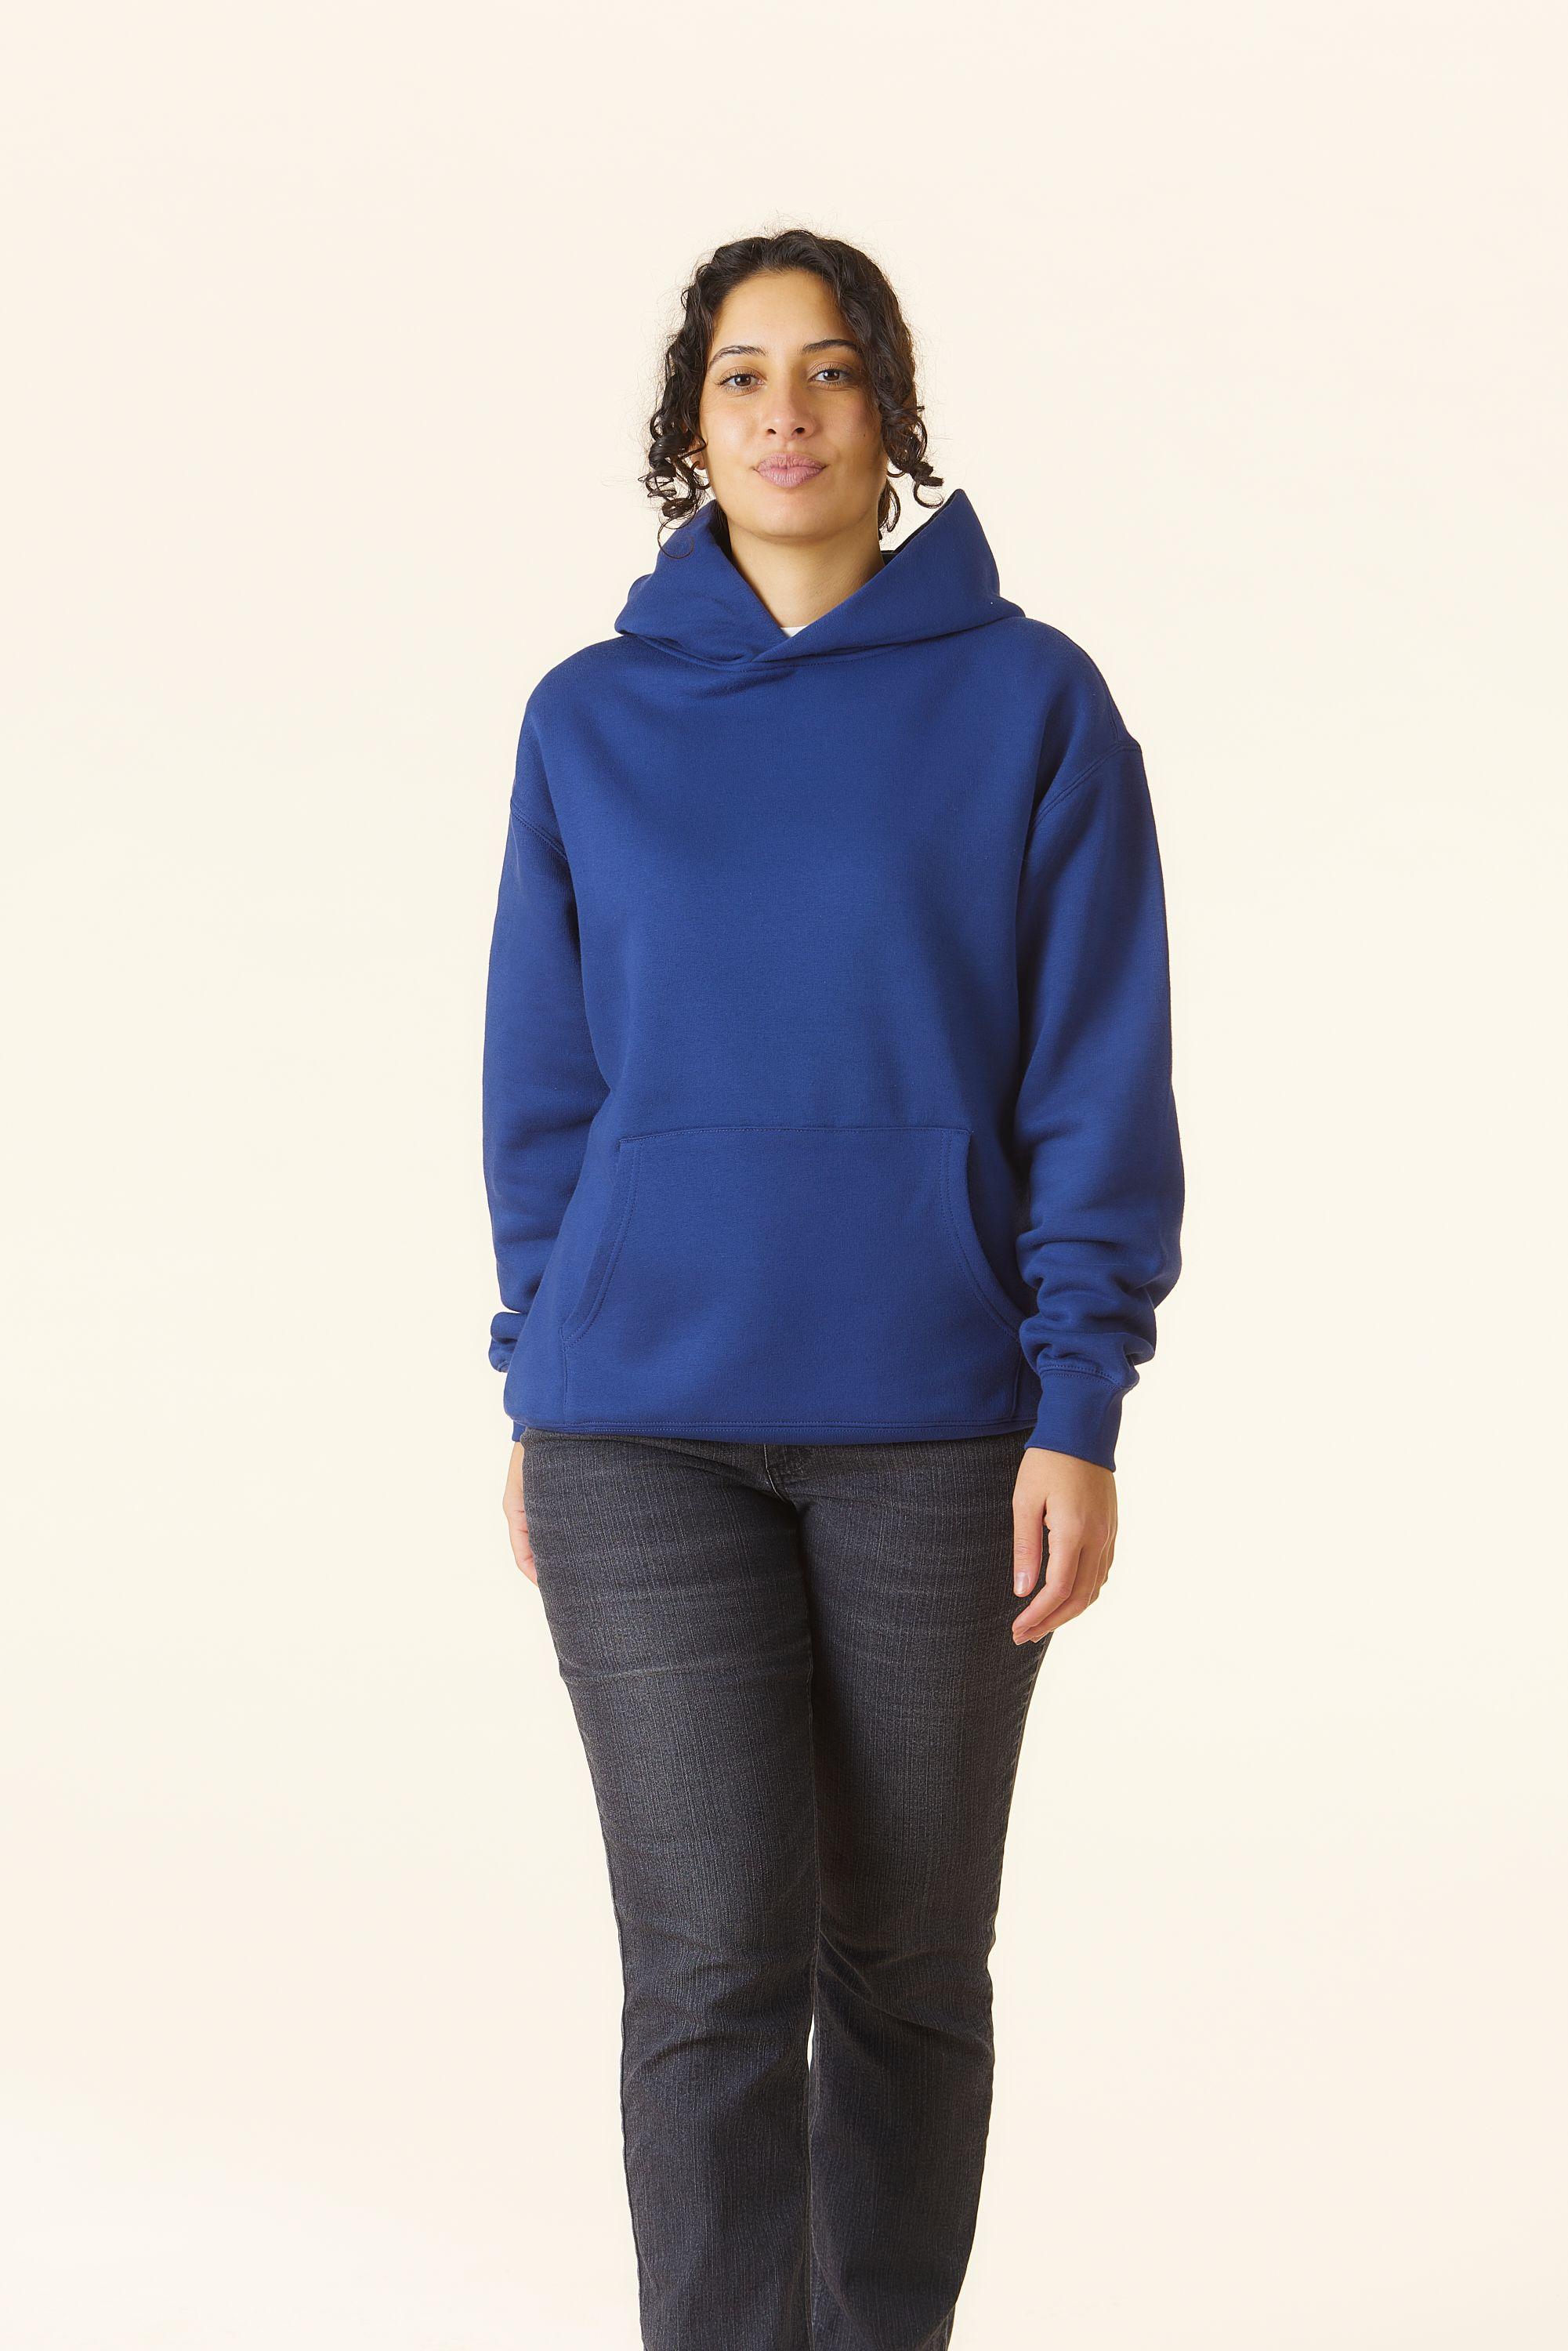 AS Colour pocket hoodie_Cobalt (navy)_women_front_MERCHERY-DEC-232845.jpeg